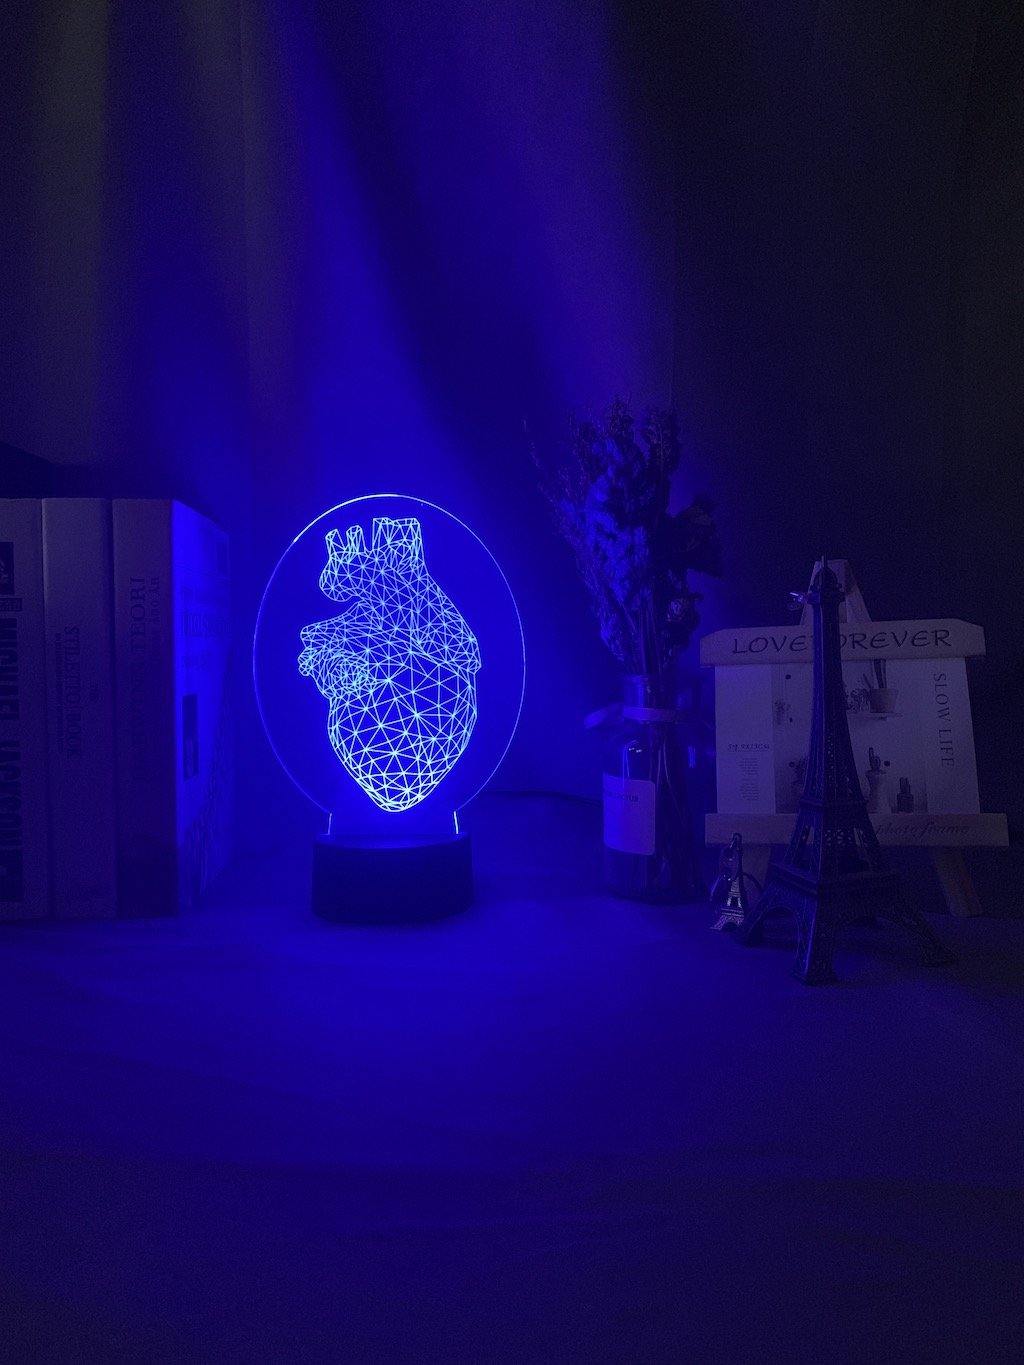 Heart Hologram Nightlight iLightBox 3D™ Lamp - iLightBox 3D®